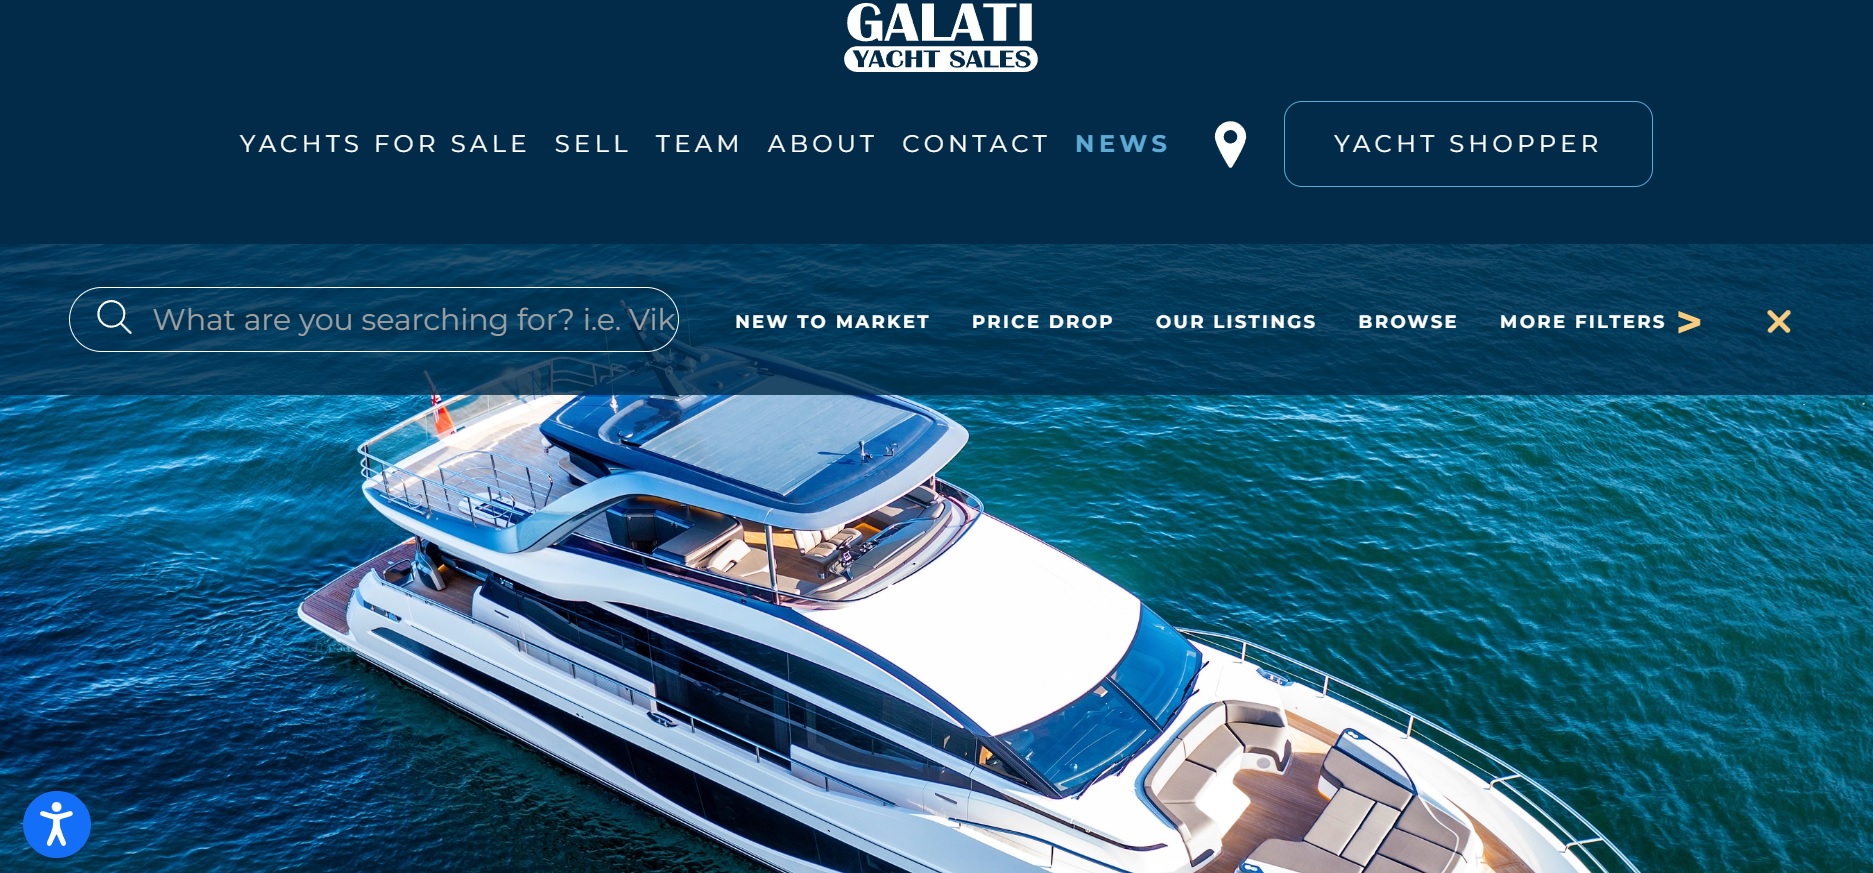 Website Design on Boat Dealership Sales